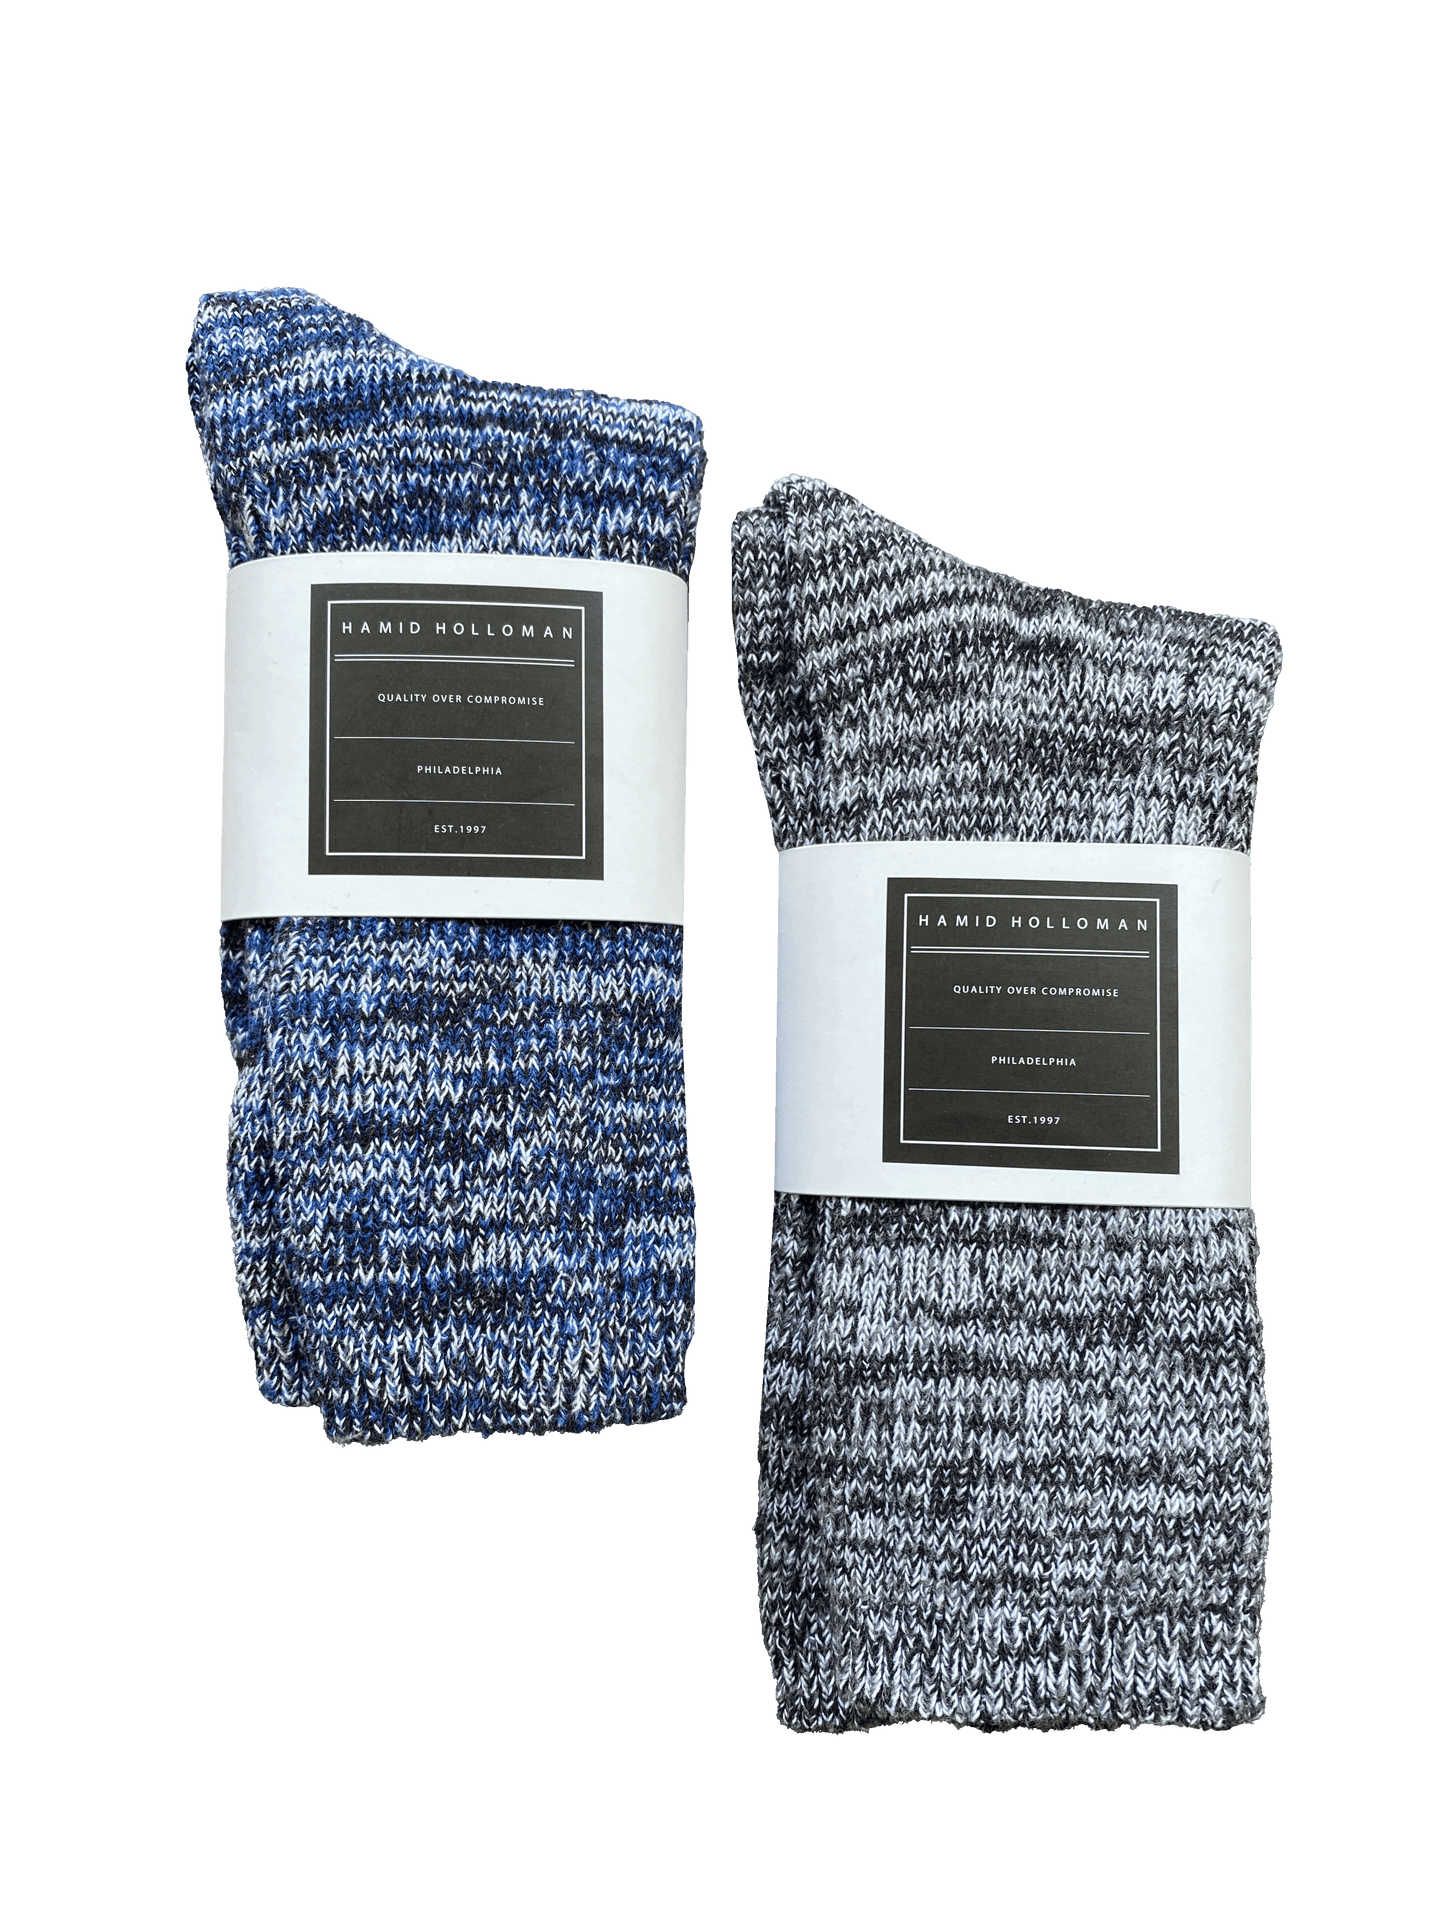 Holloman marled socks